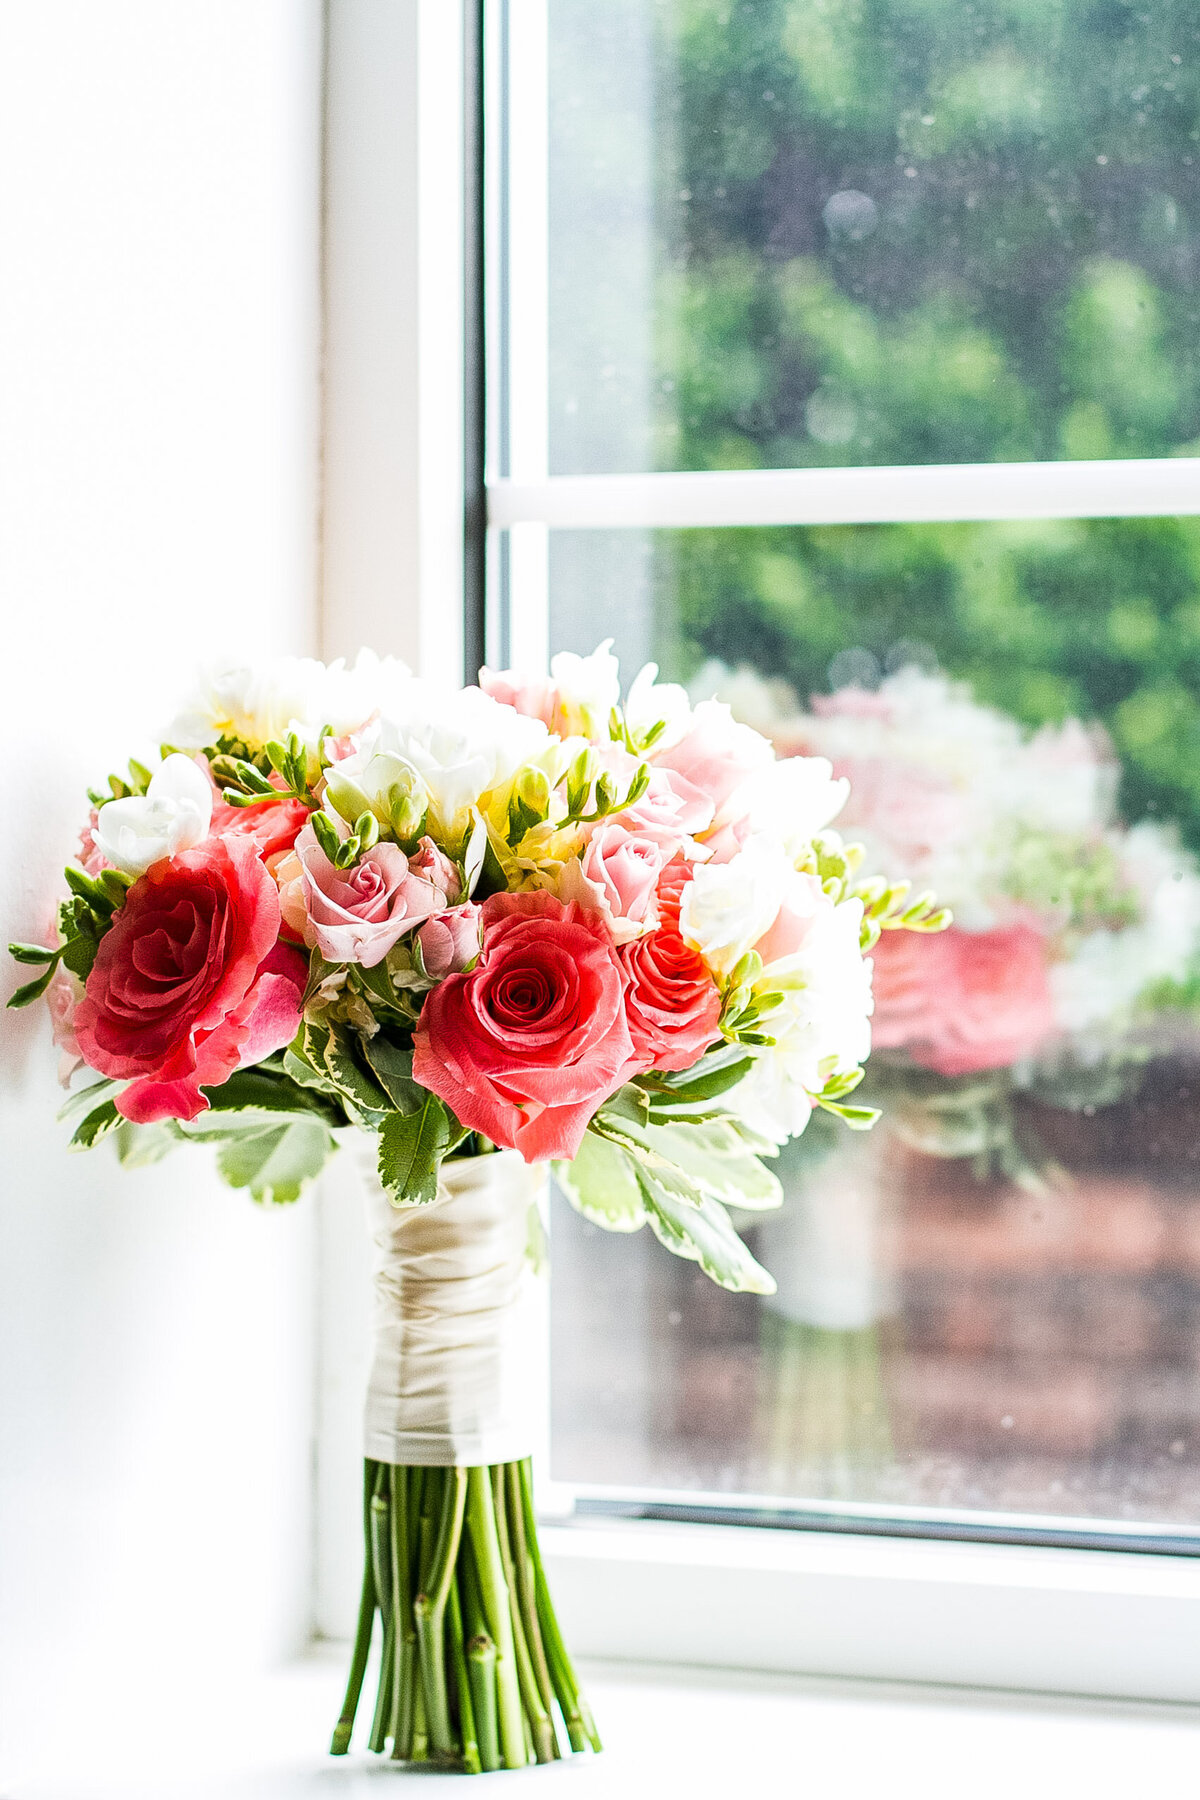 njeri-bishota-lauren-ashley-bridal-bouquet-pink-roses-wedding-detail-photography